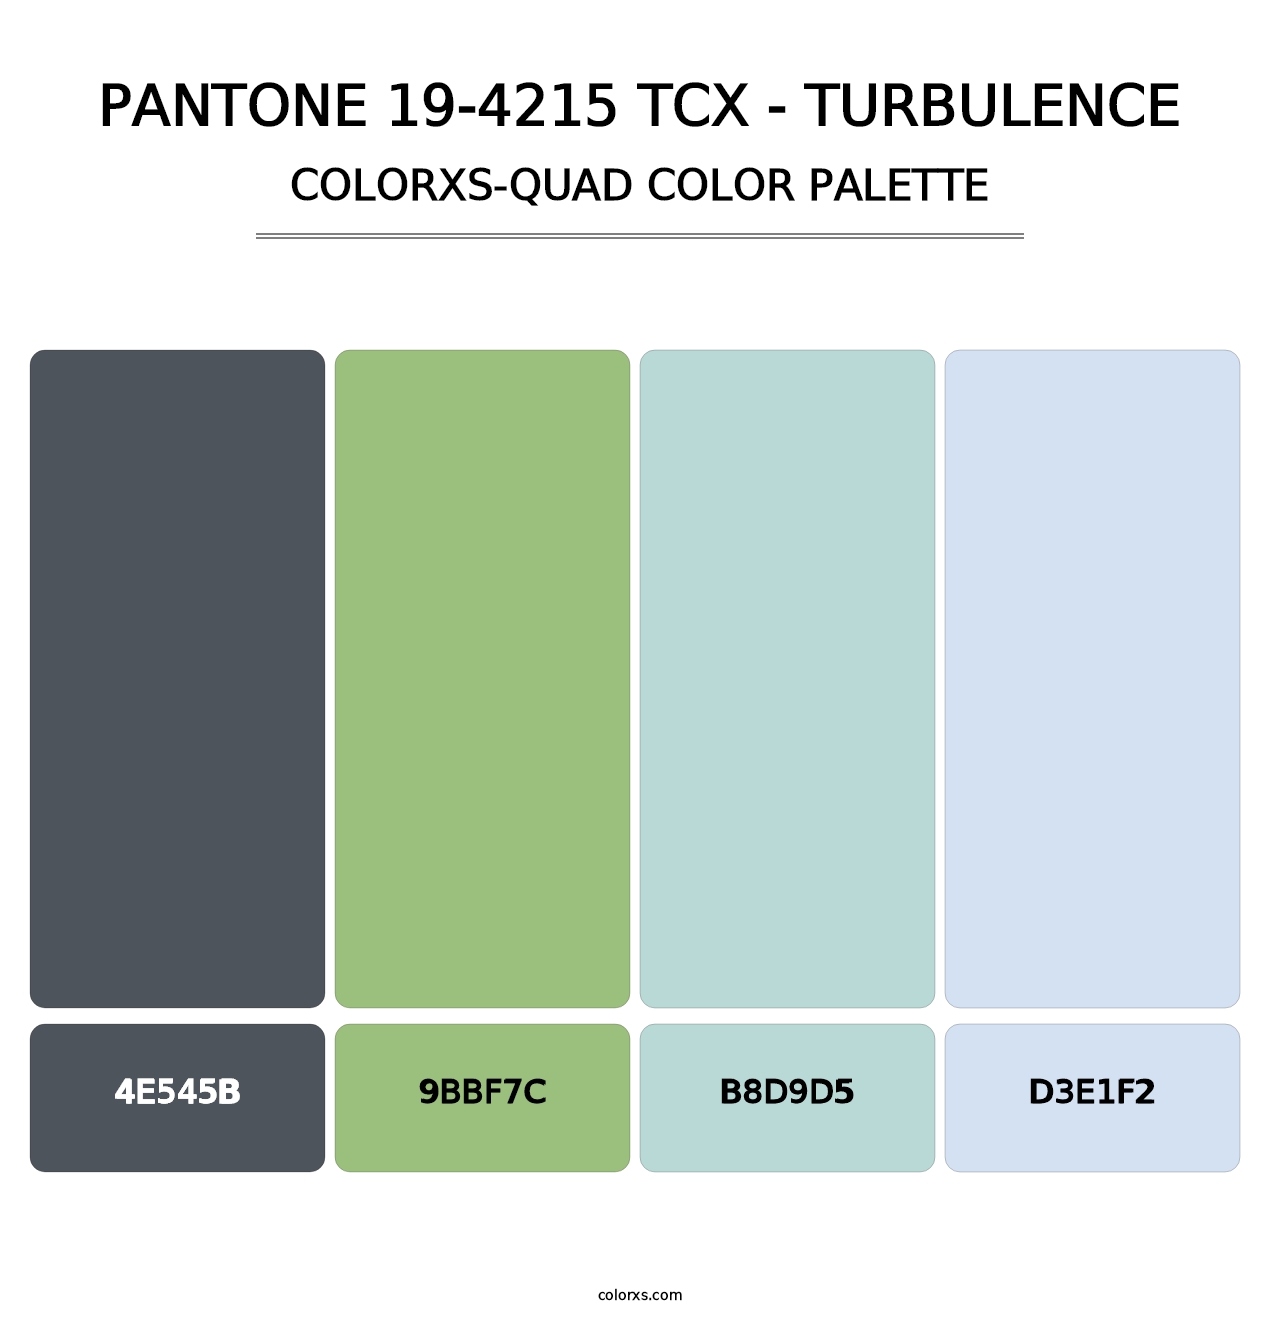 PANTONE 19-4215 TCX - Turbulence - Colorxs Quad Palette